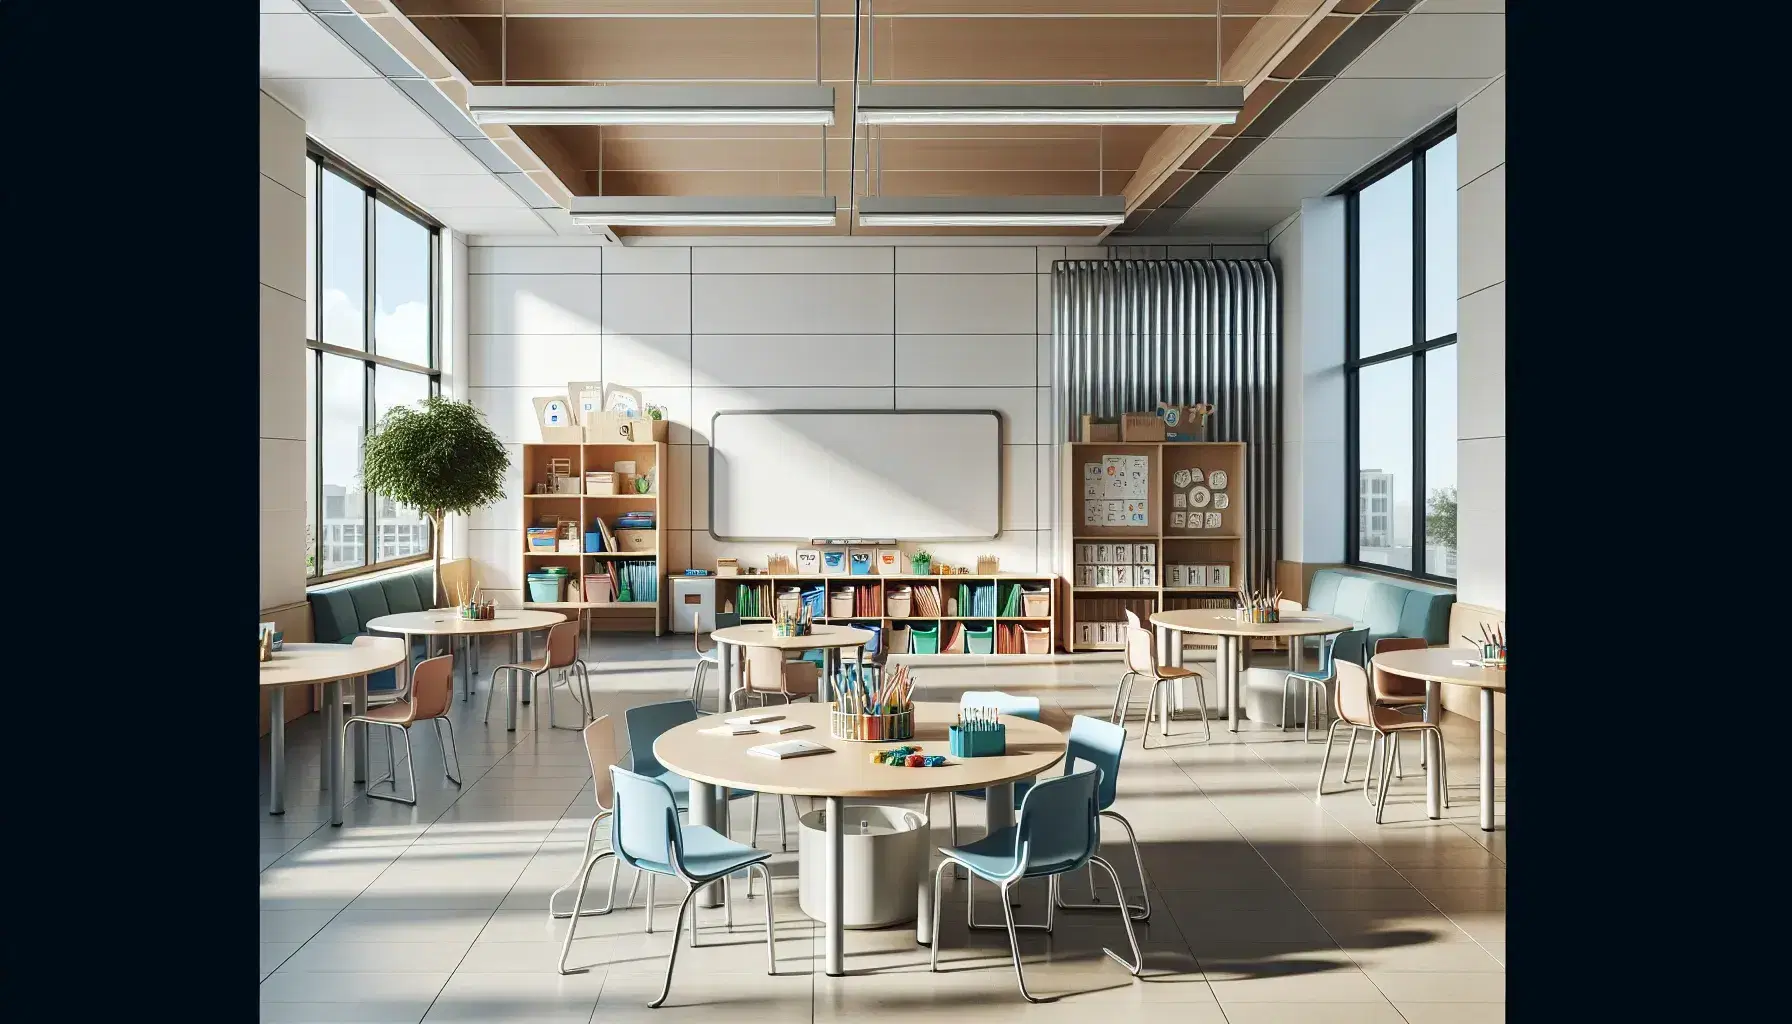 Aula espaciosa y luminosa con mesas redondas para trabajo en grupo, sillas azules, pizarra blanca, estantería con libros y materiales educativos, y planta verde.